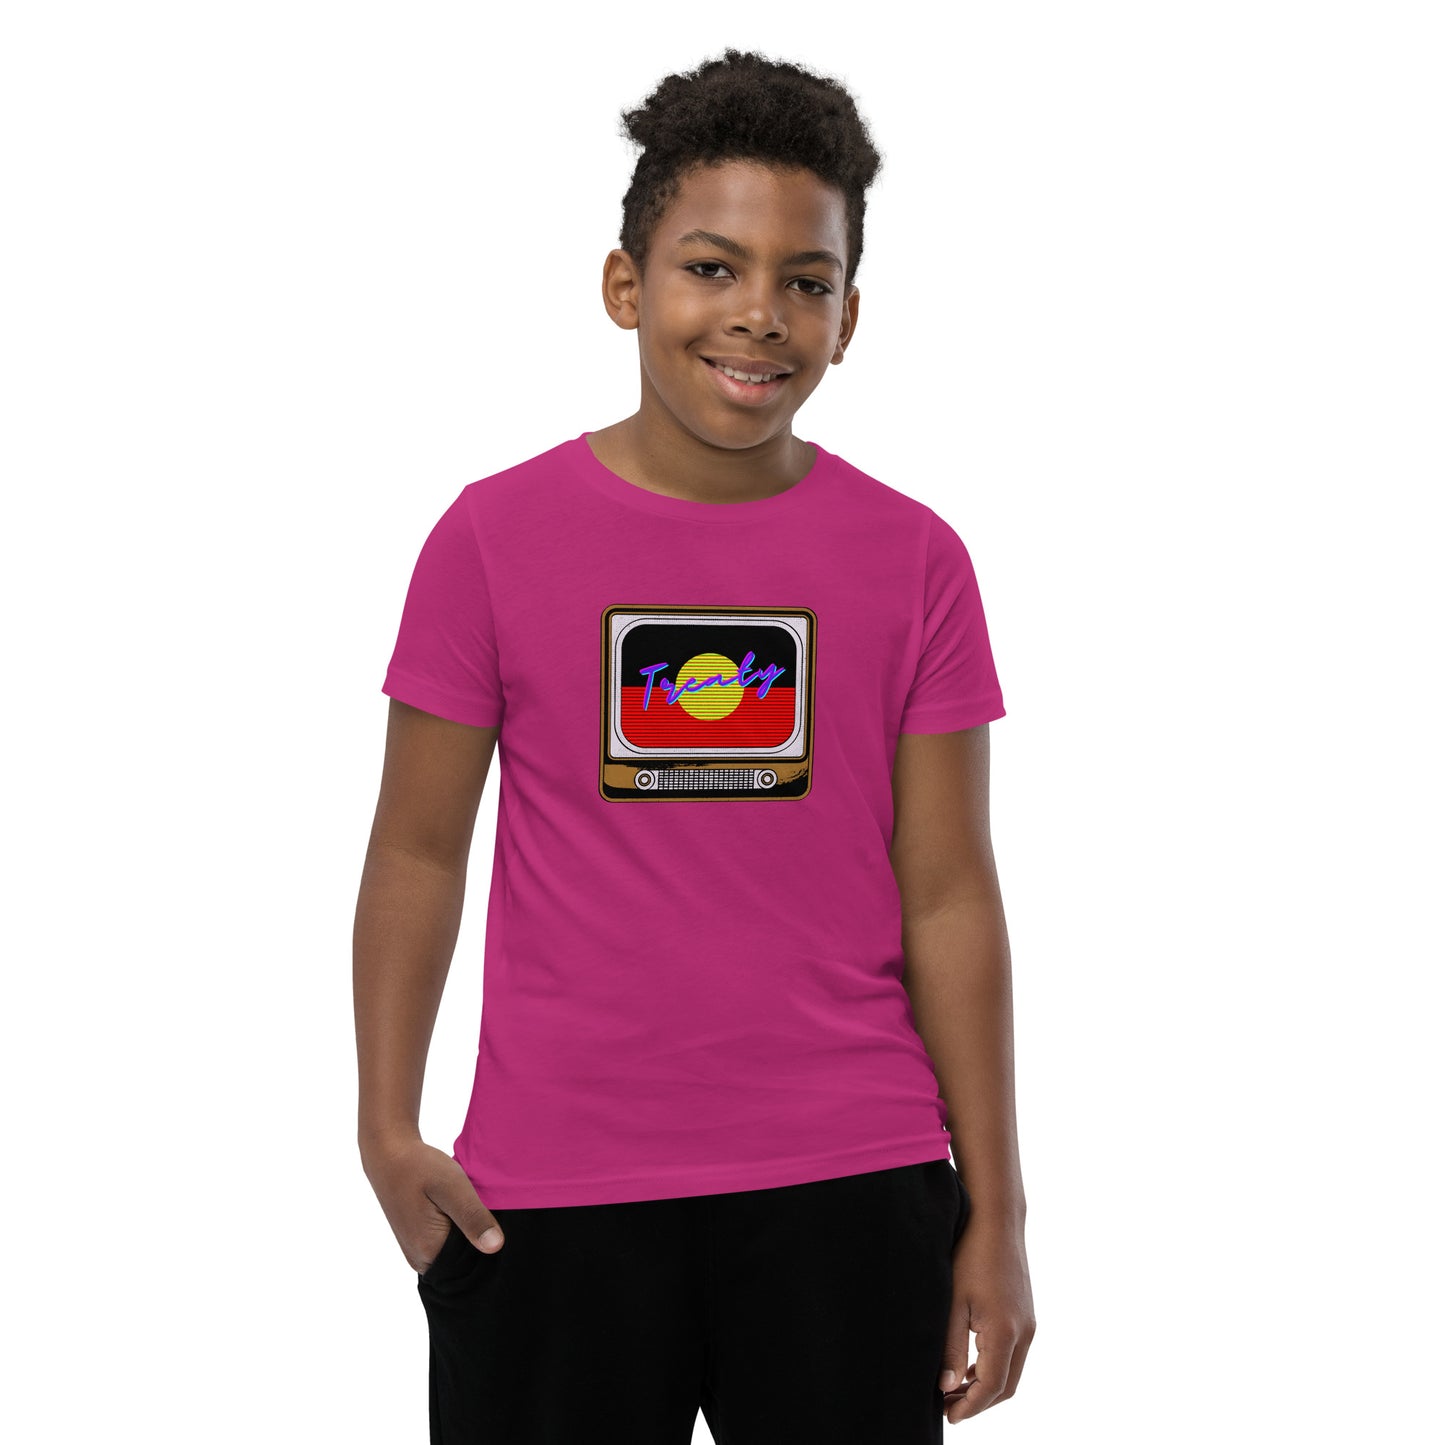 Treaty Youth Short Sleeve T-Shirt